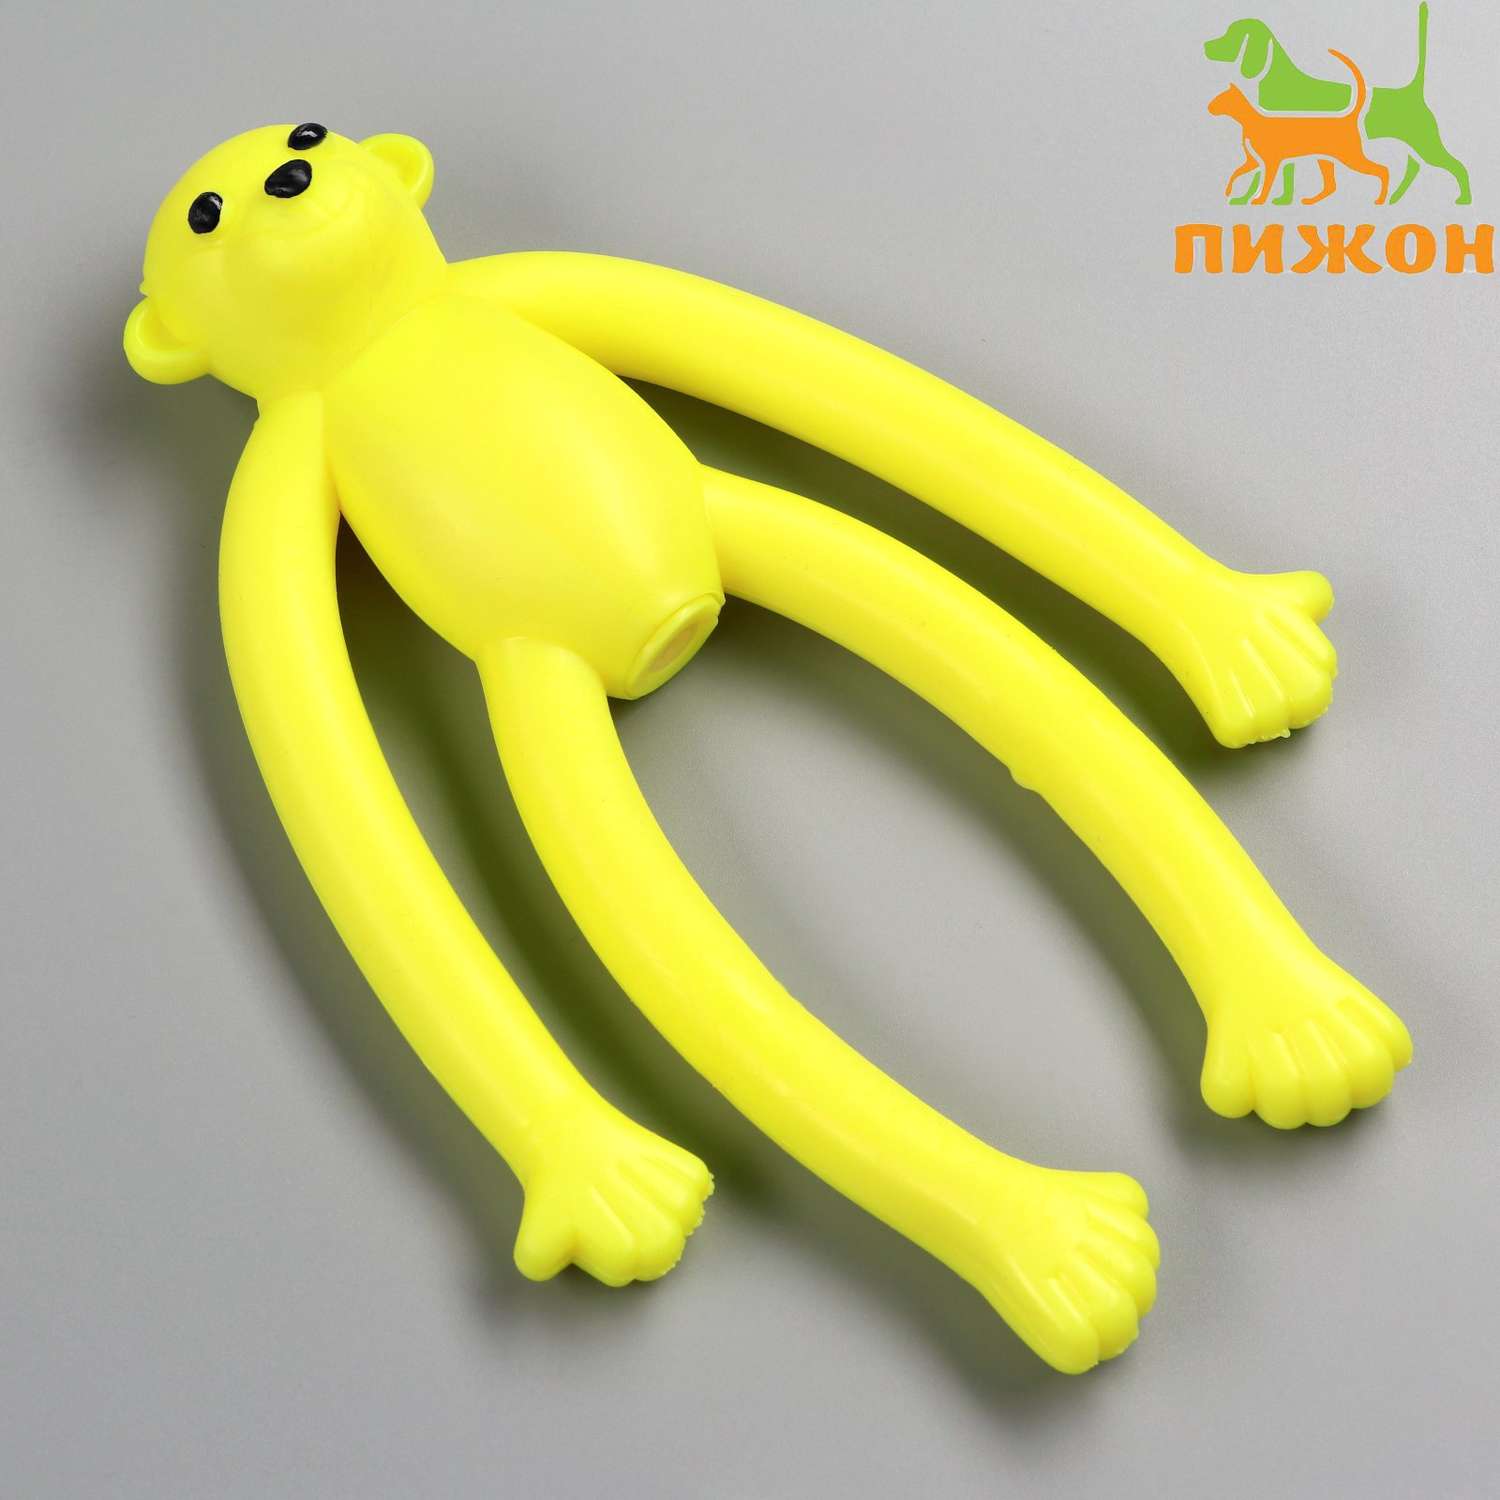 Игрушка Пижон для собак «Обезьяна» с пищалкой 19.5 см силикон жёлтая - фото 1